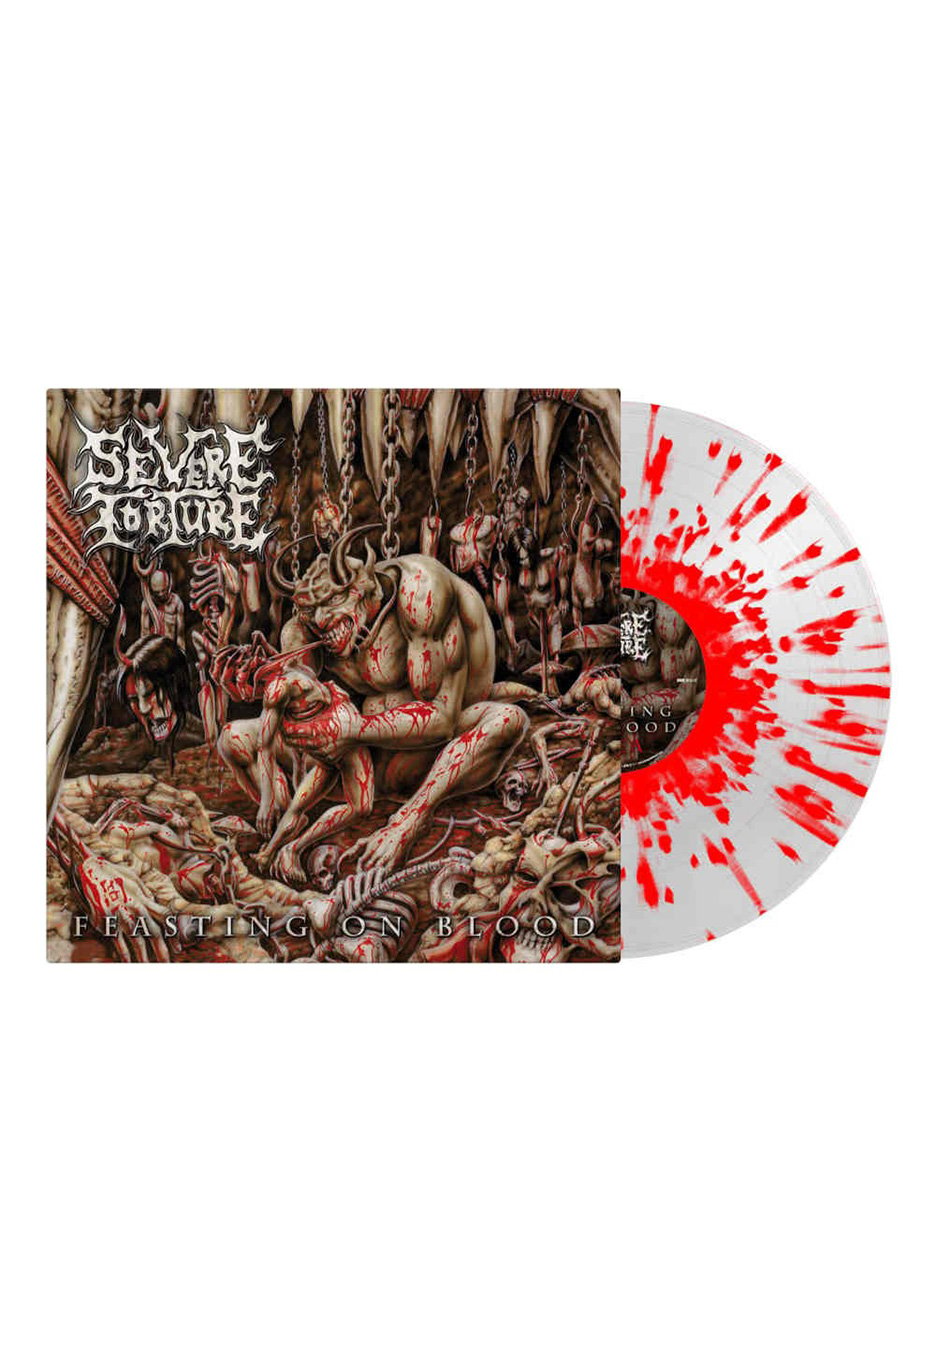 Severe Torture - Feasting On Blood Transparent Red - Splattered Vinyl